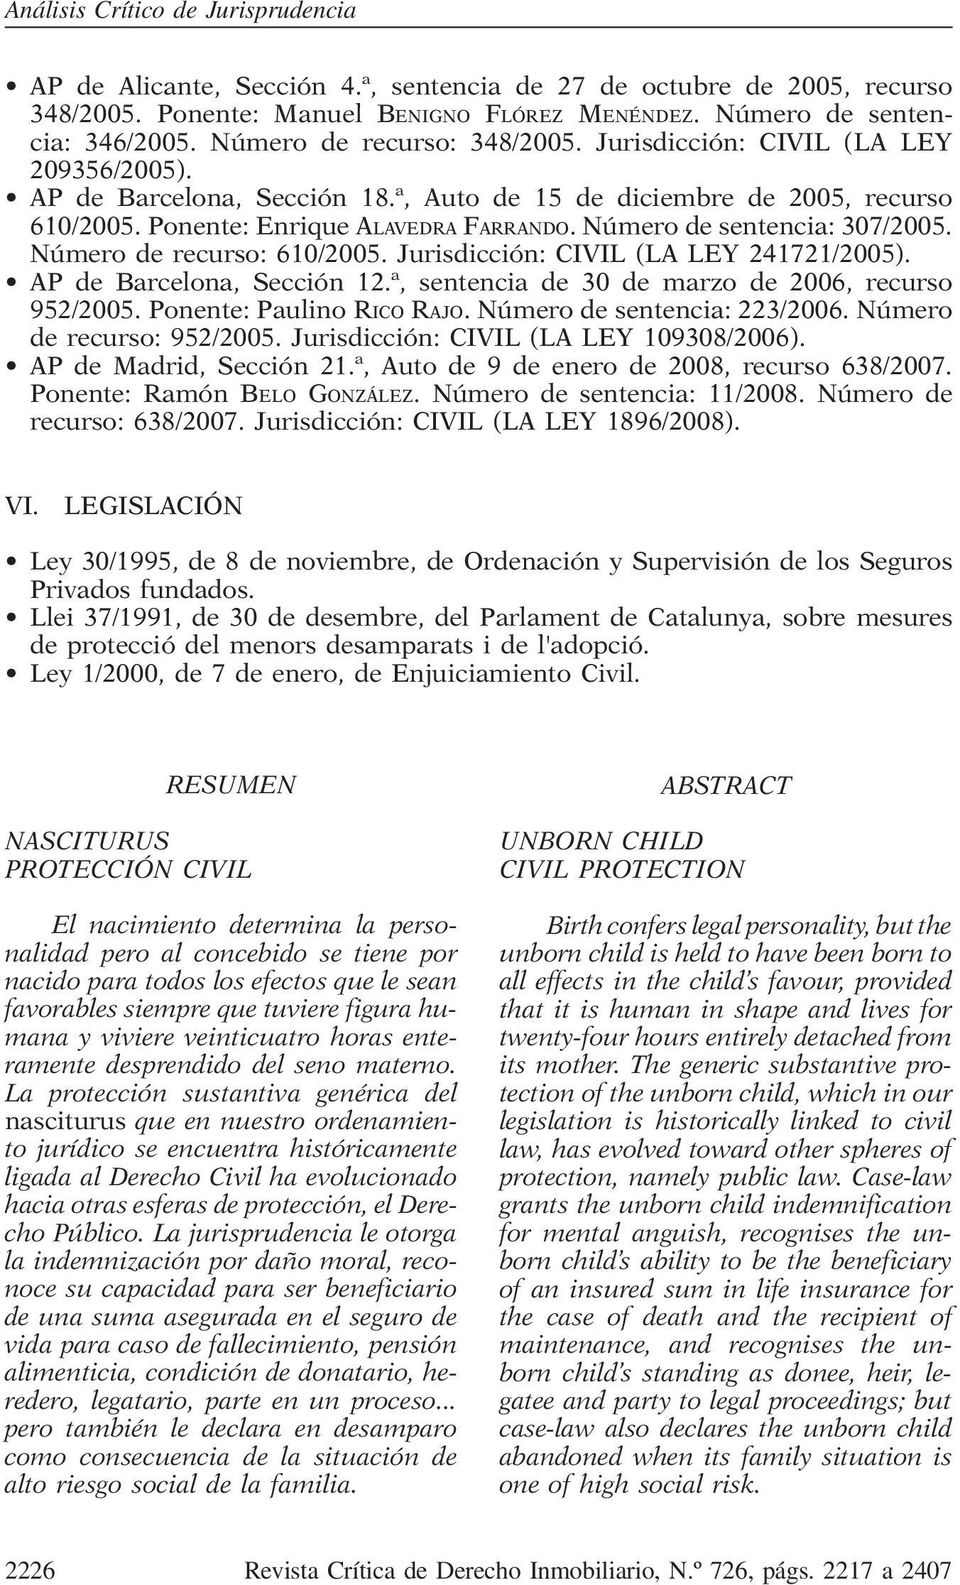 Número de recurso: 610/2005. Jurisdicción: CIVIL (LA LEY 241721/2005). AP de Barcelona, Sección 12.ª, sentencia de 30 de marzo de 2006, recurso 952/2005. Ponente: Paulino RICO RAJO.